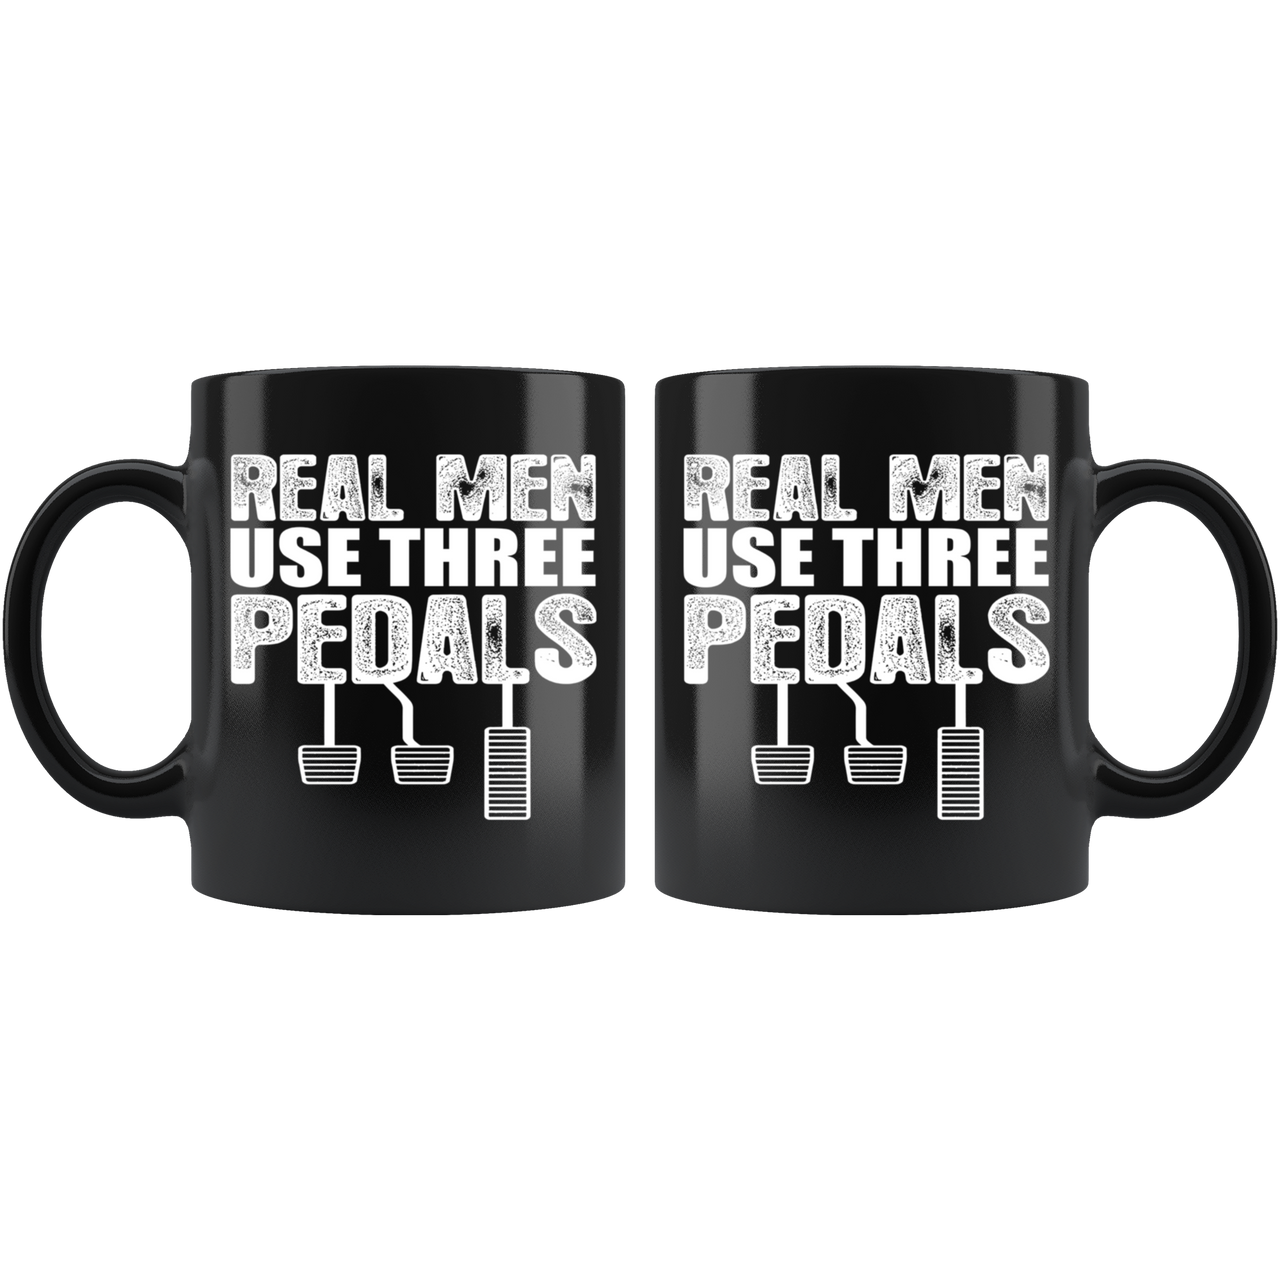 Real Men Use Three Pedals Mug!